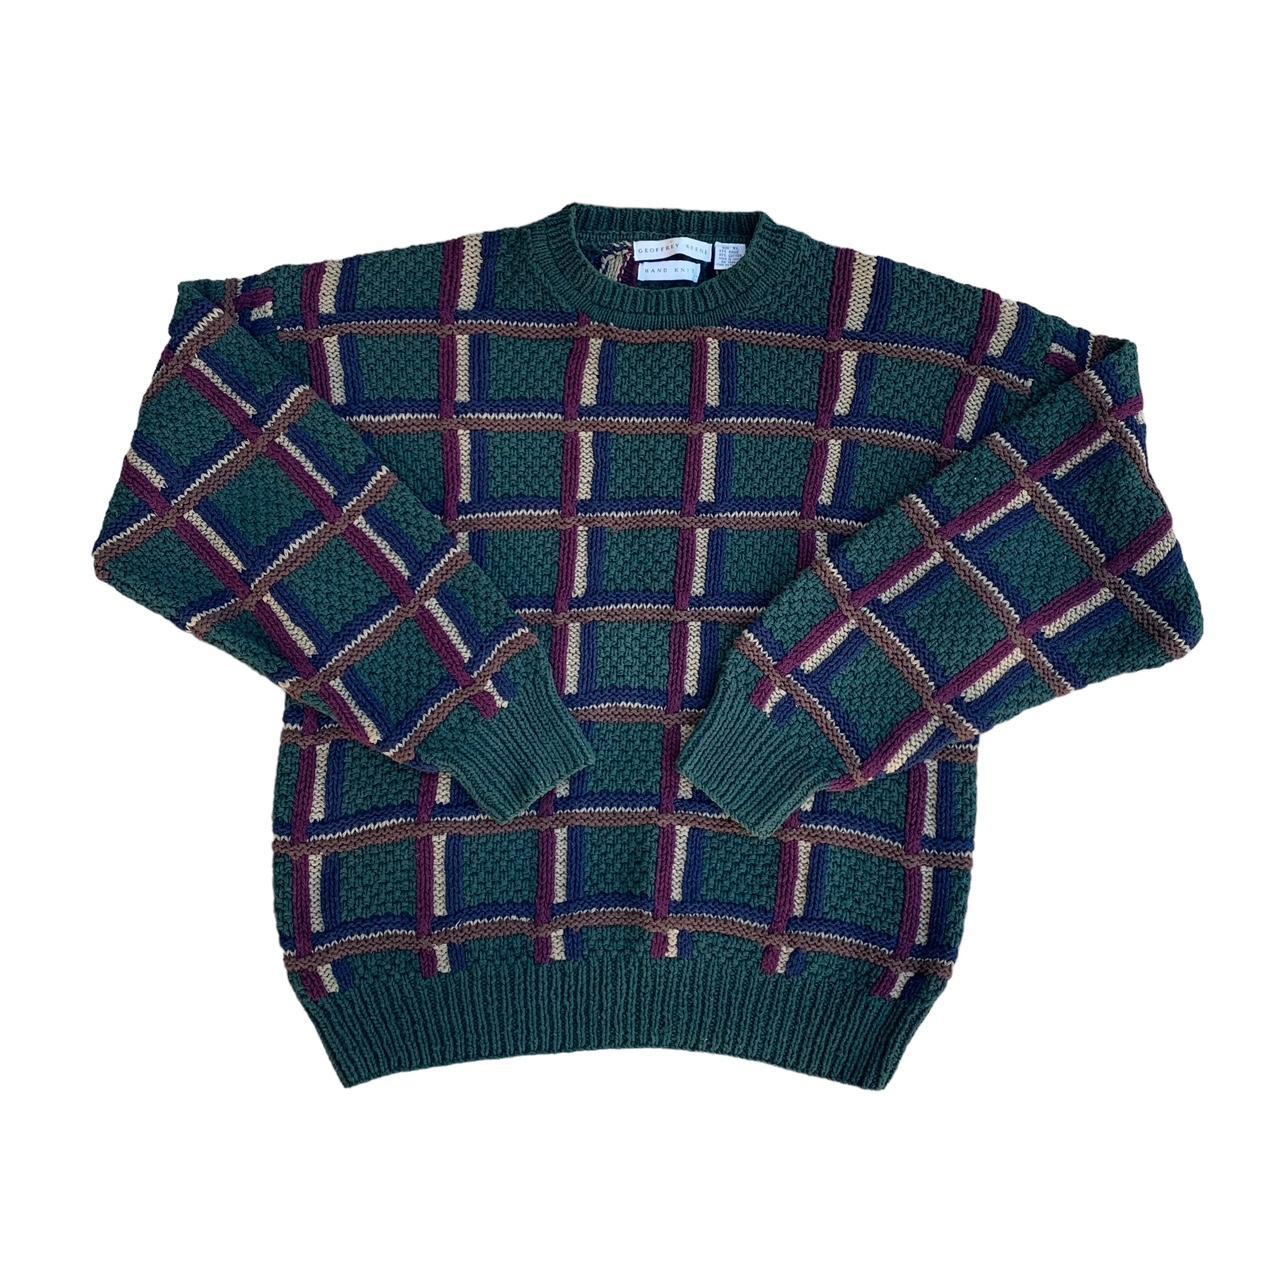 Vintage 90s Geoffrey Beene Hand Knit Green Pullover... - Depop